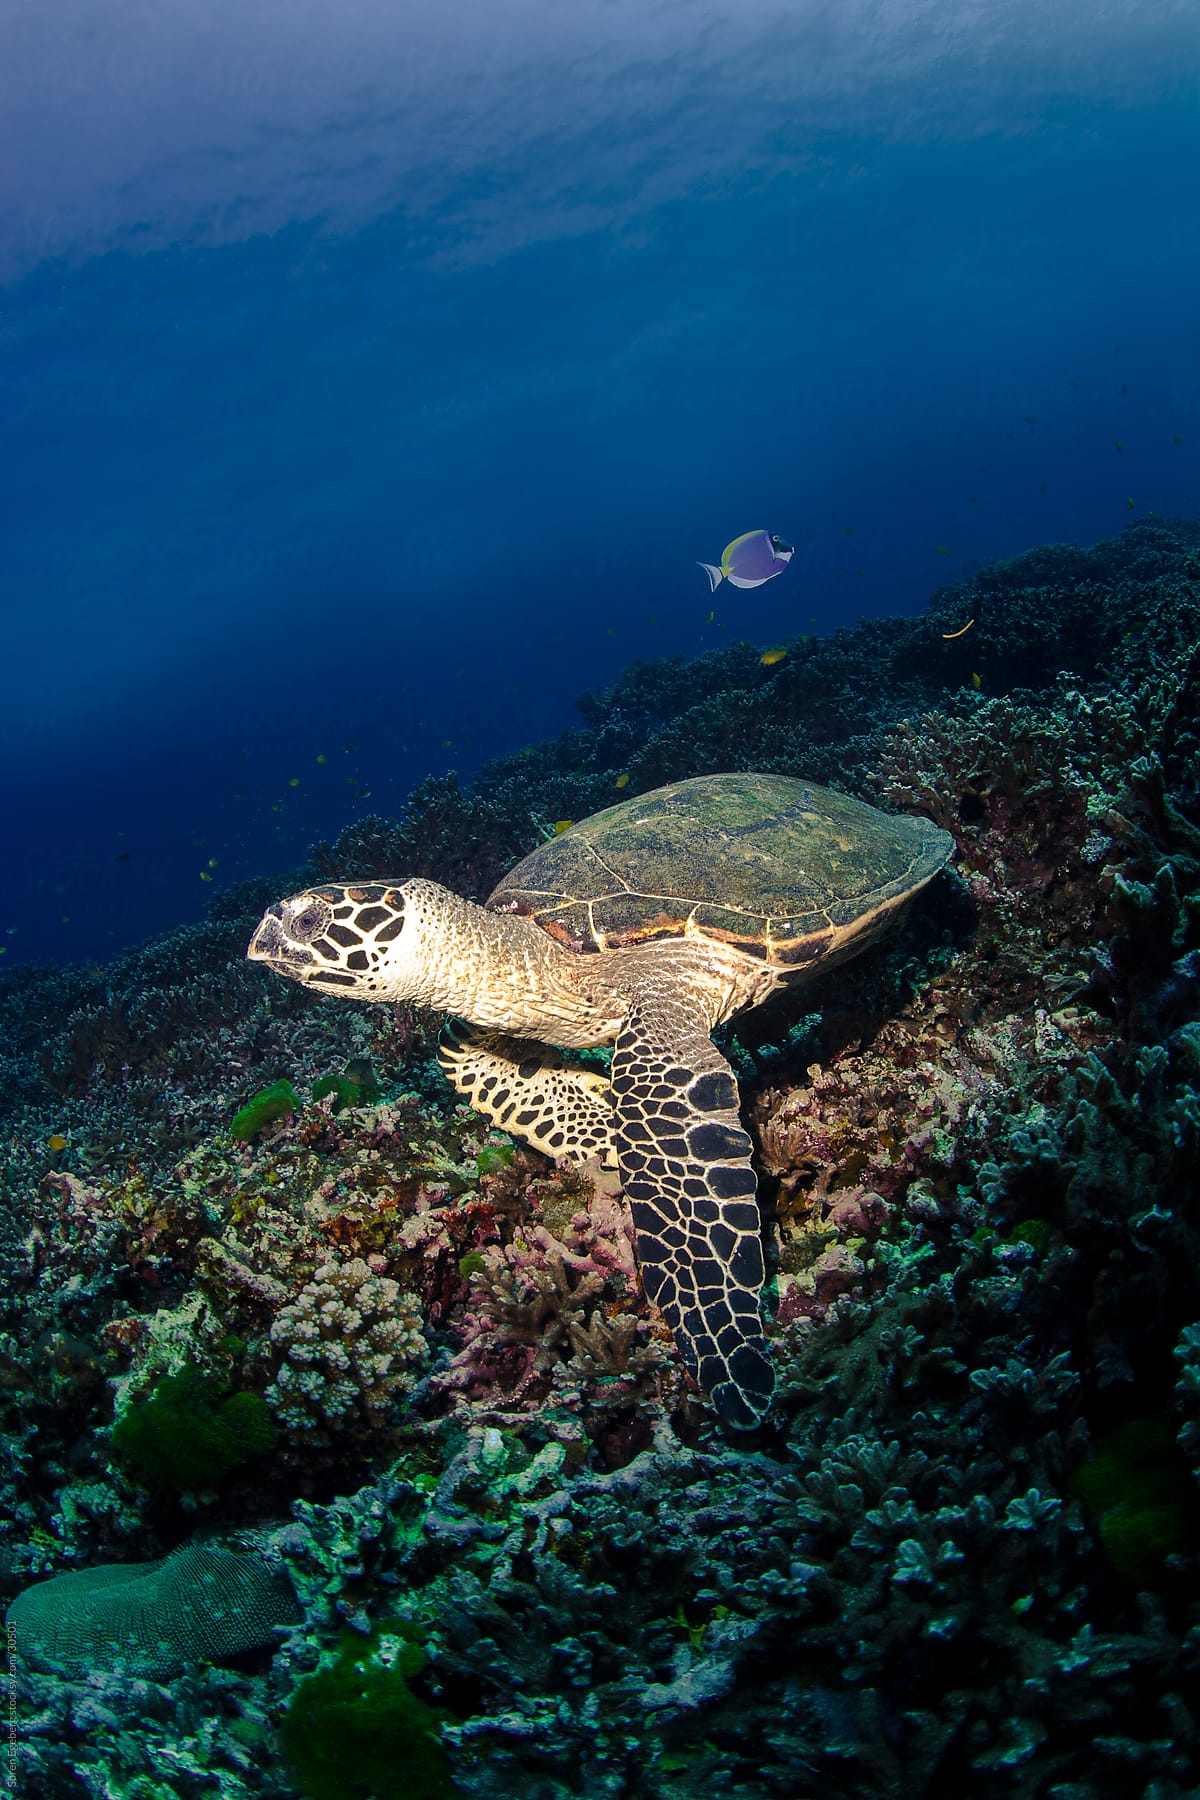 Sea turtle swimming underwater over coral reef in ocean